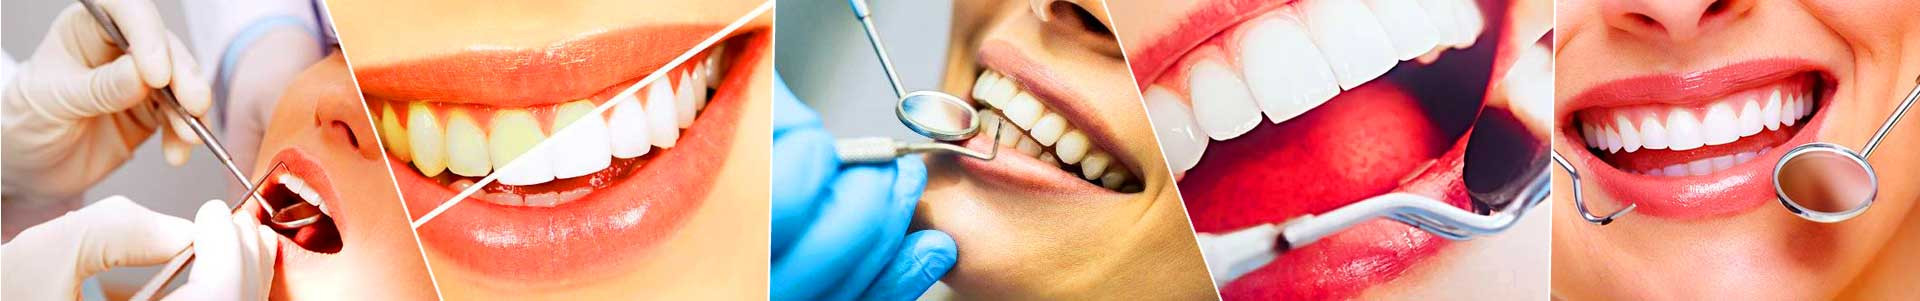 بهترین خرید کلینیک دندانپزشکی هامون تهران با بیشترین درصد تخفیف در قیمت - جدید